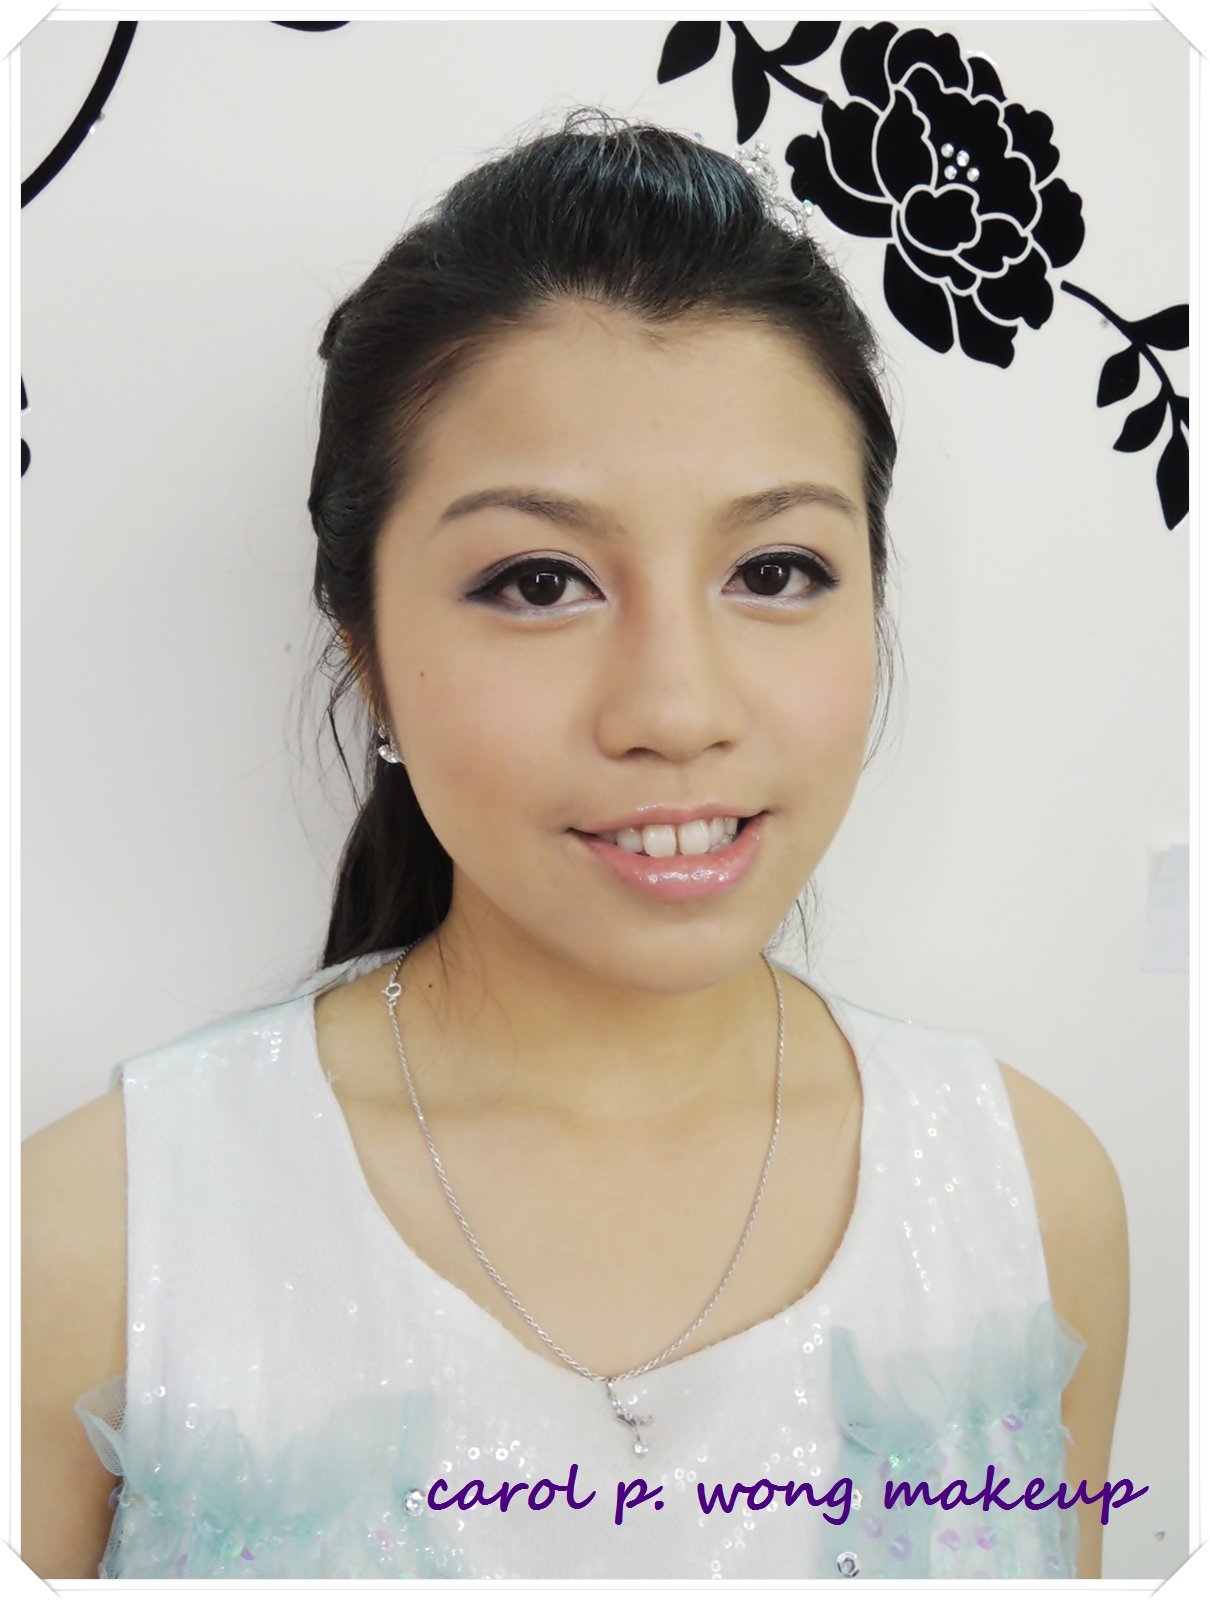 謝師宴化妝set頭 Gradin Makeup / 宴會化妝 @ Jun 2013